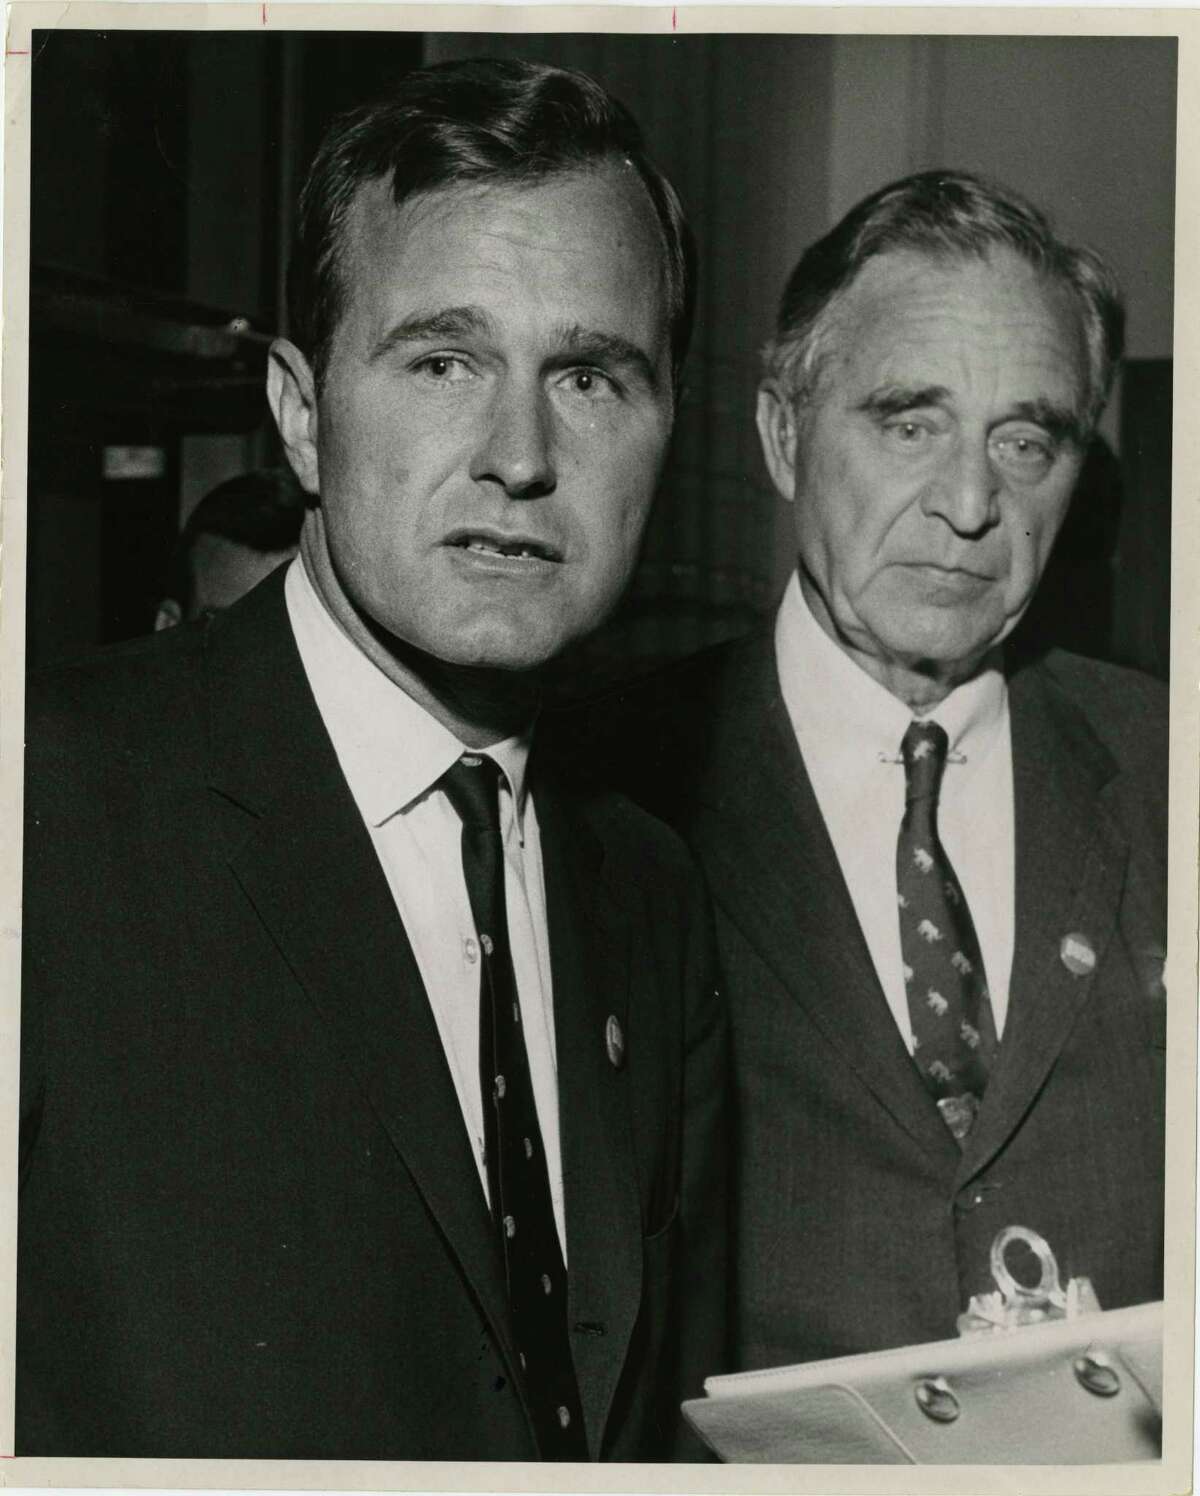 1950: Prescott's failed Senate bid  Prescott Bush, father of George H.W. Bush, lost his first race for a Connecticut Senate seat to Democrat William Benton.